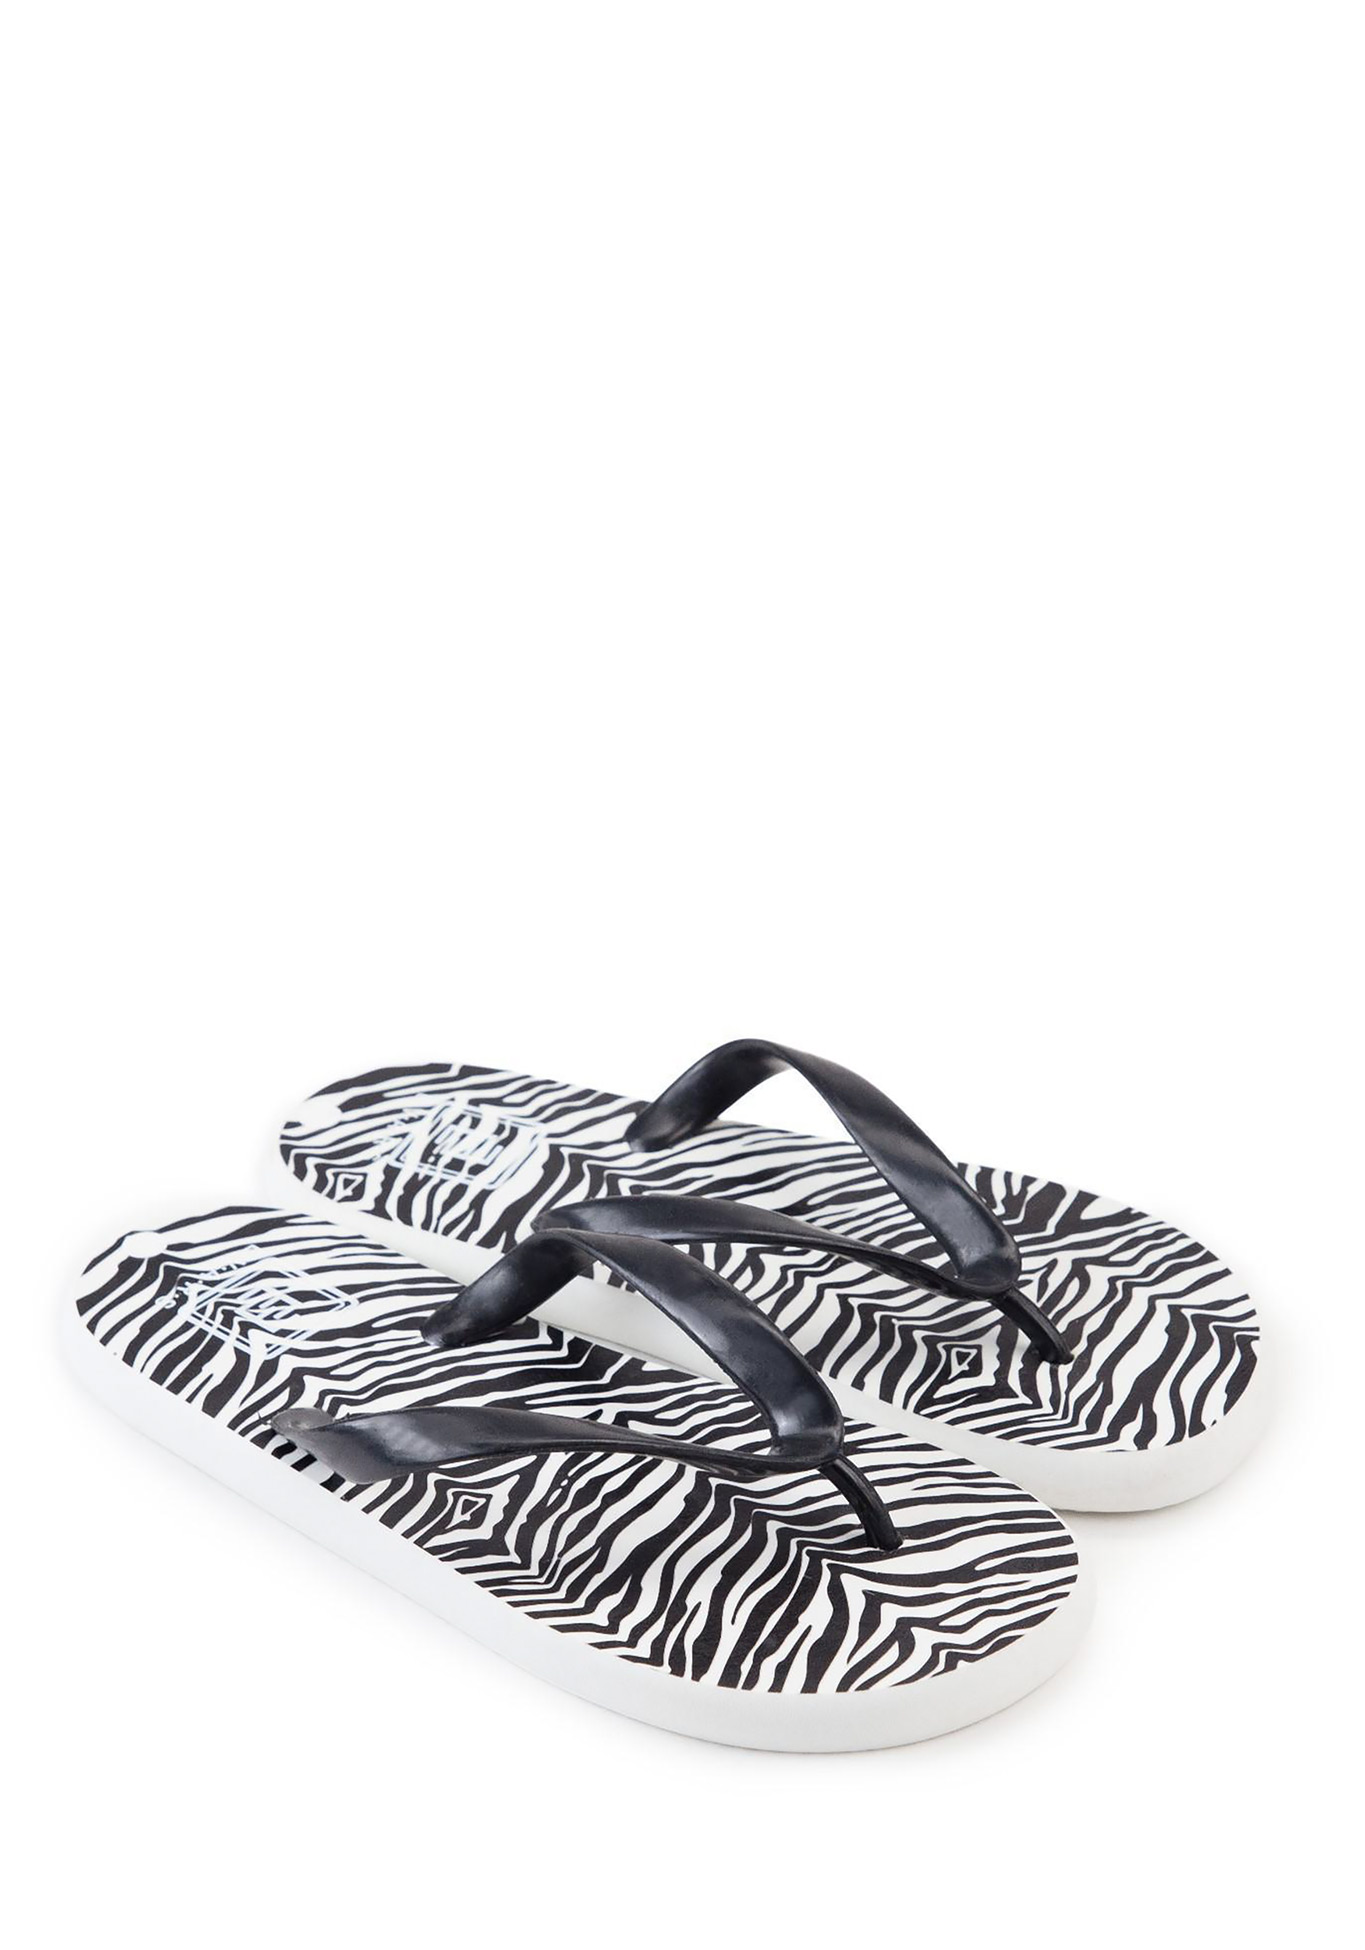 Сланцы женские "Zebra", размер 39, цвет белый/черный - фото 1